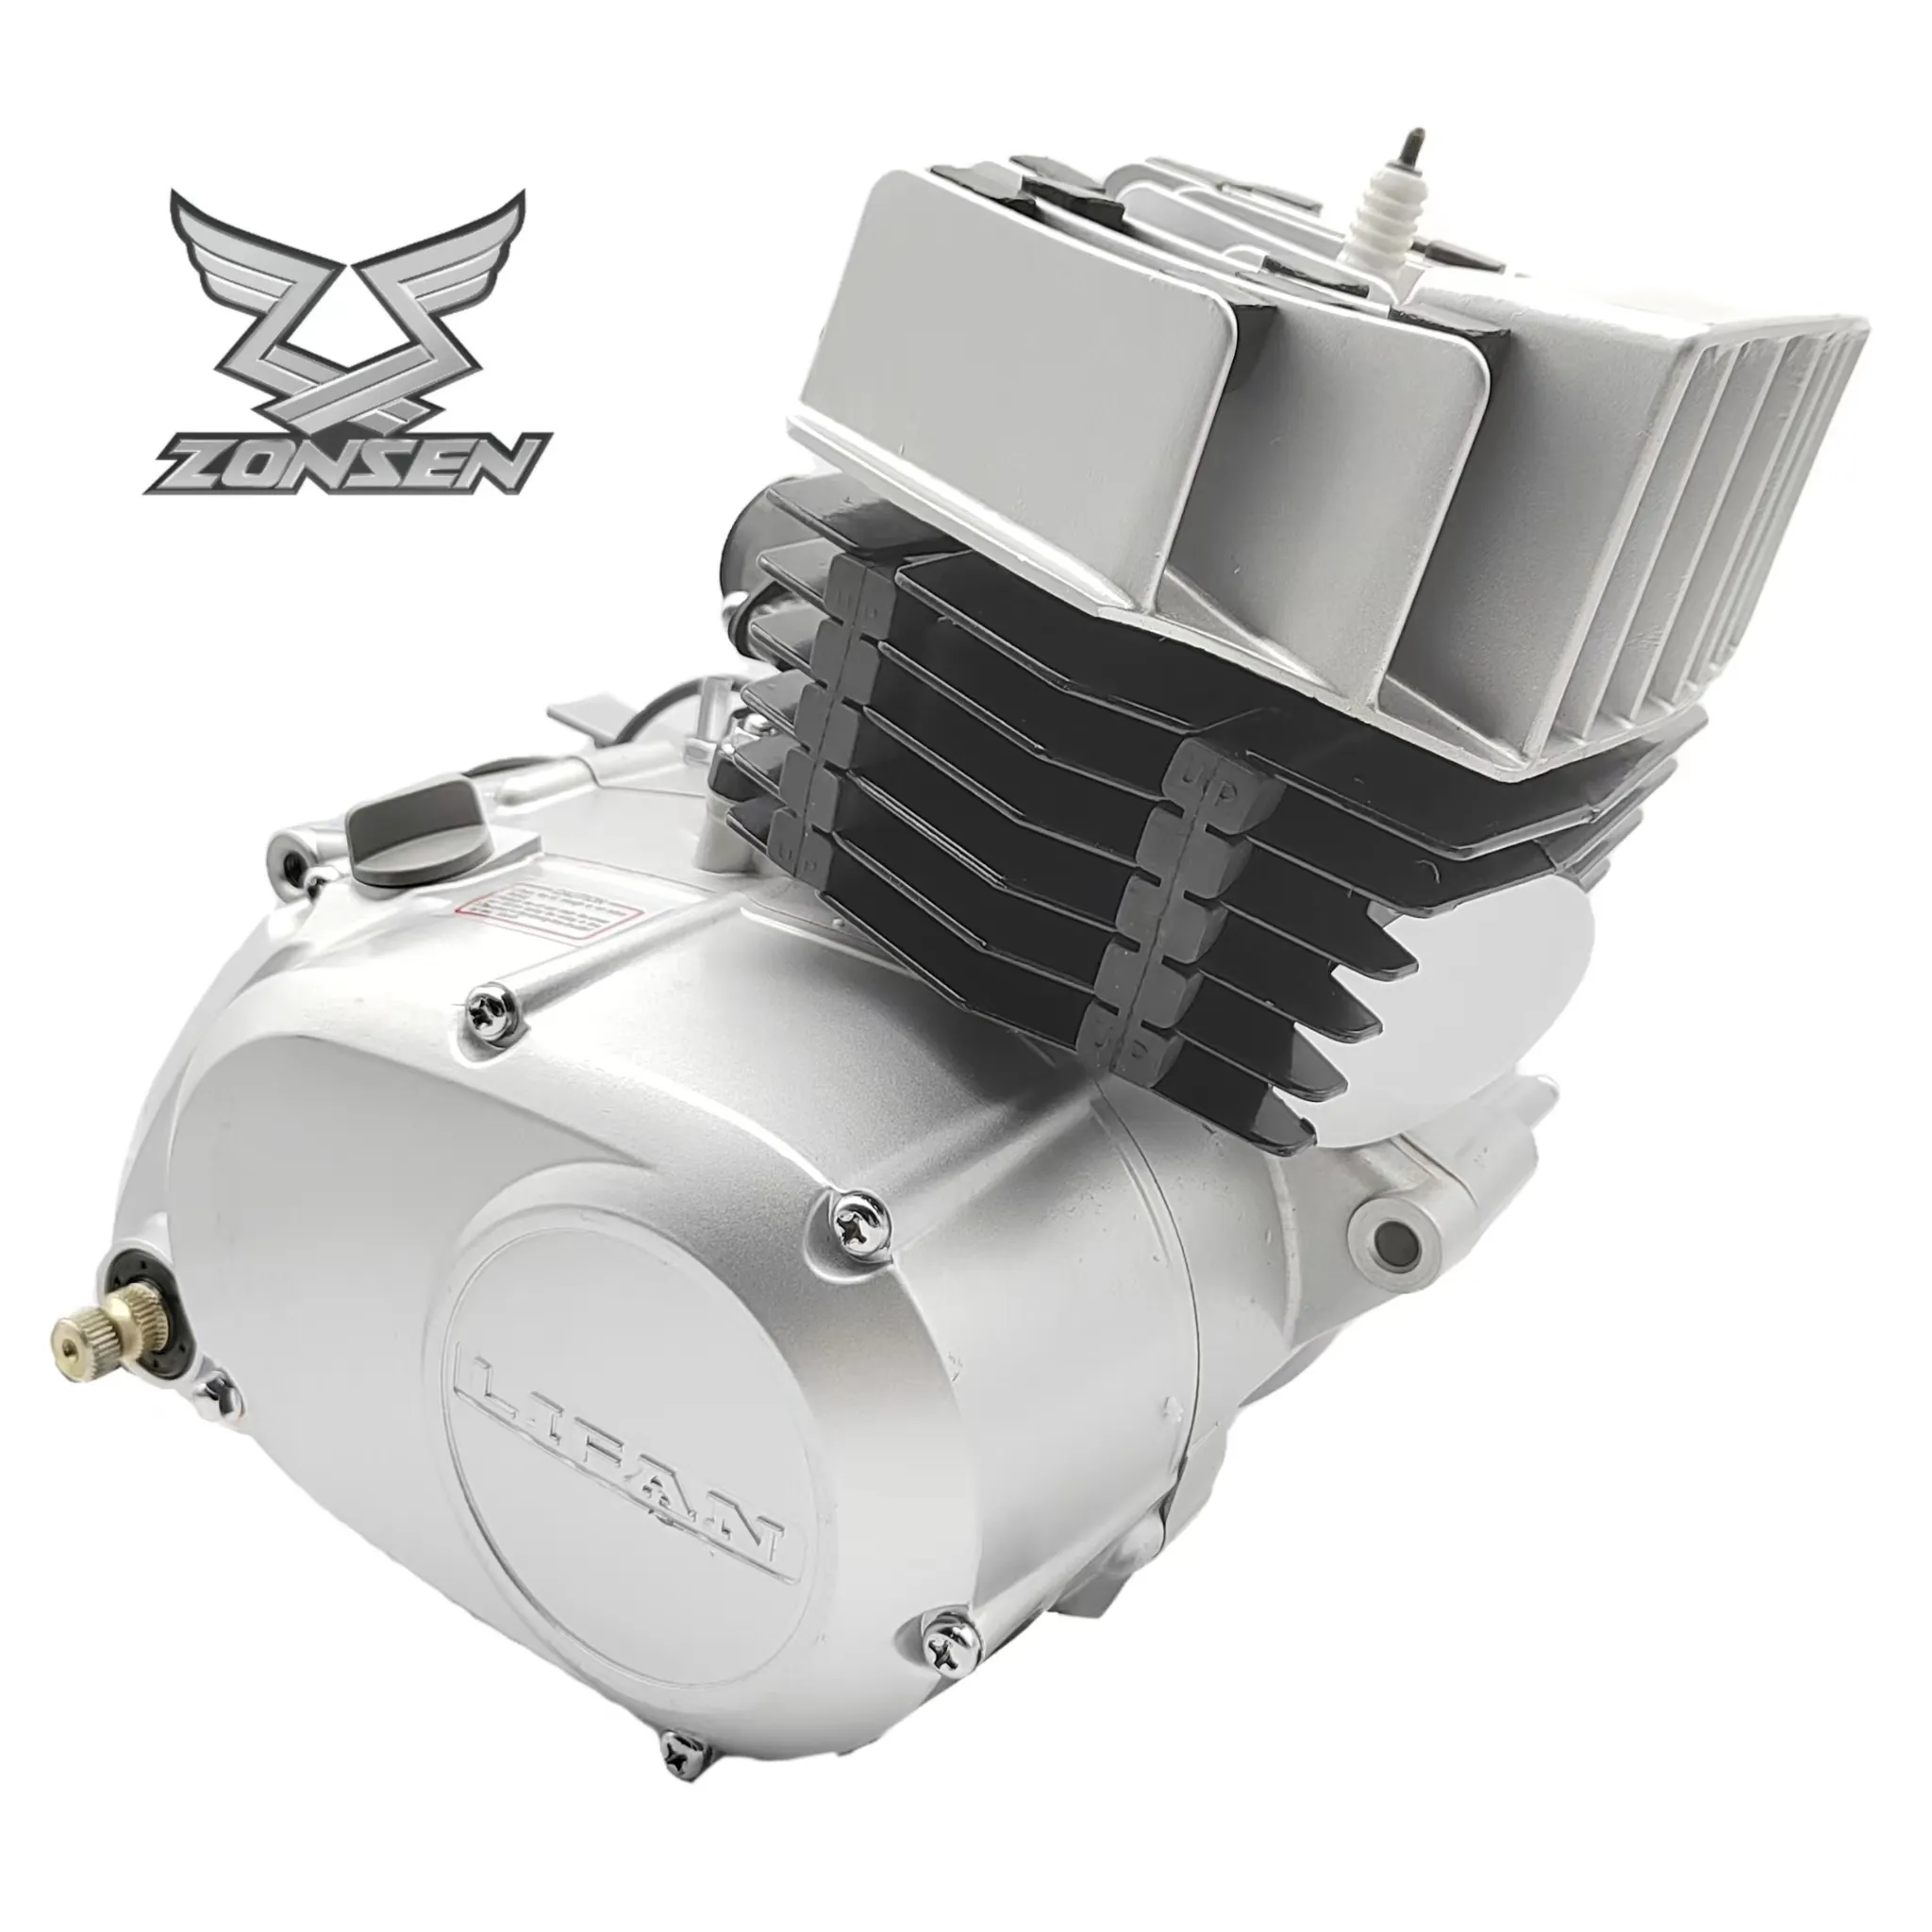 OEM Motorrad Lifan Motor 100cc Suzuki AX100 Motorrad Motor Baugruppe